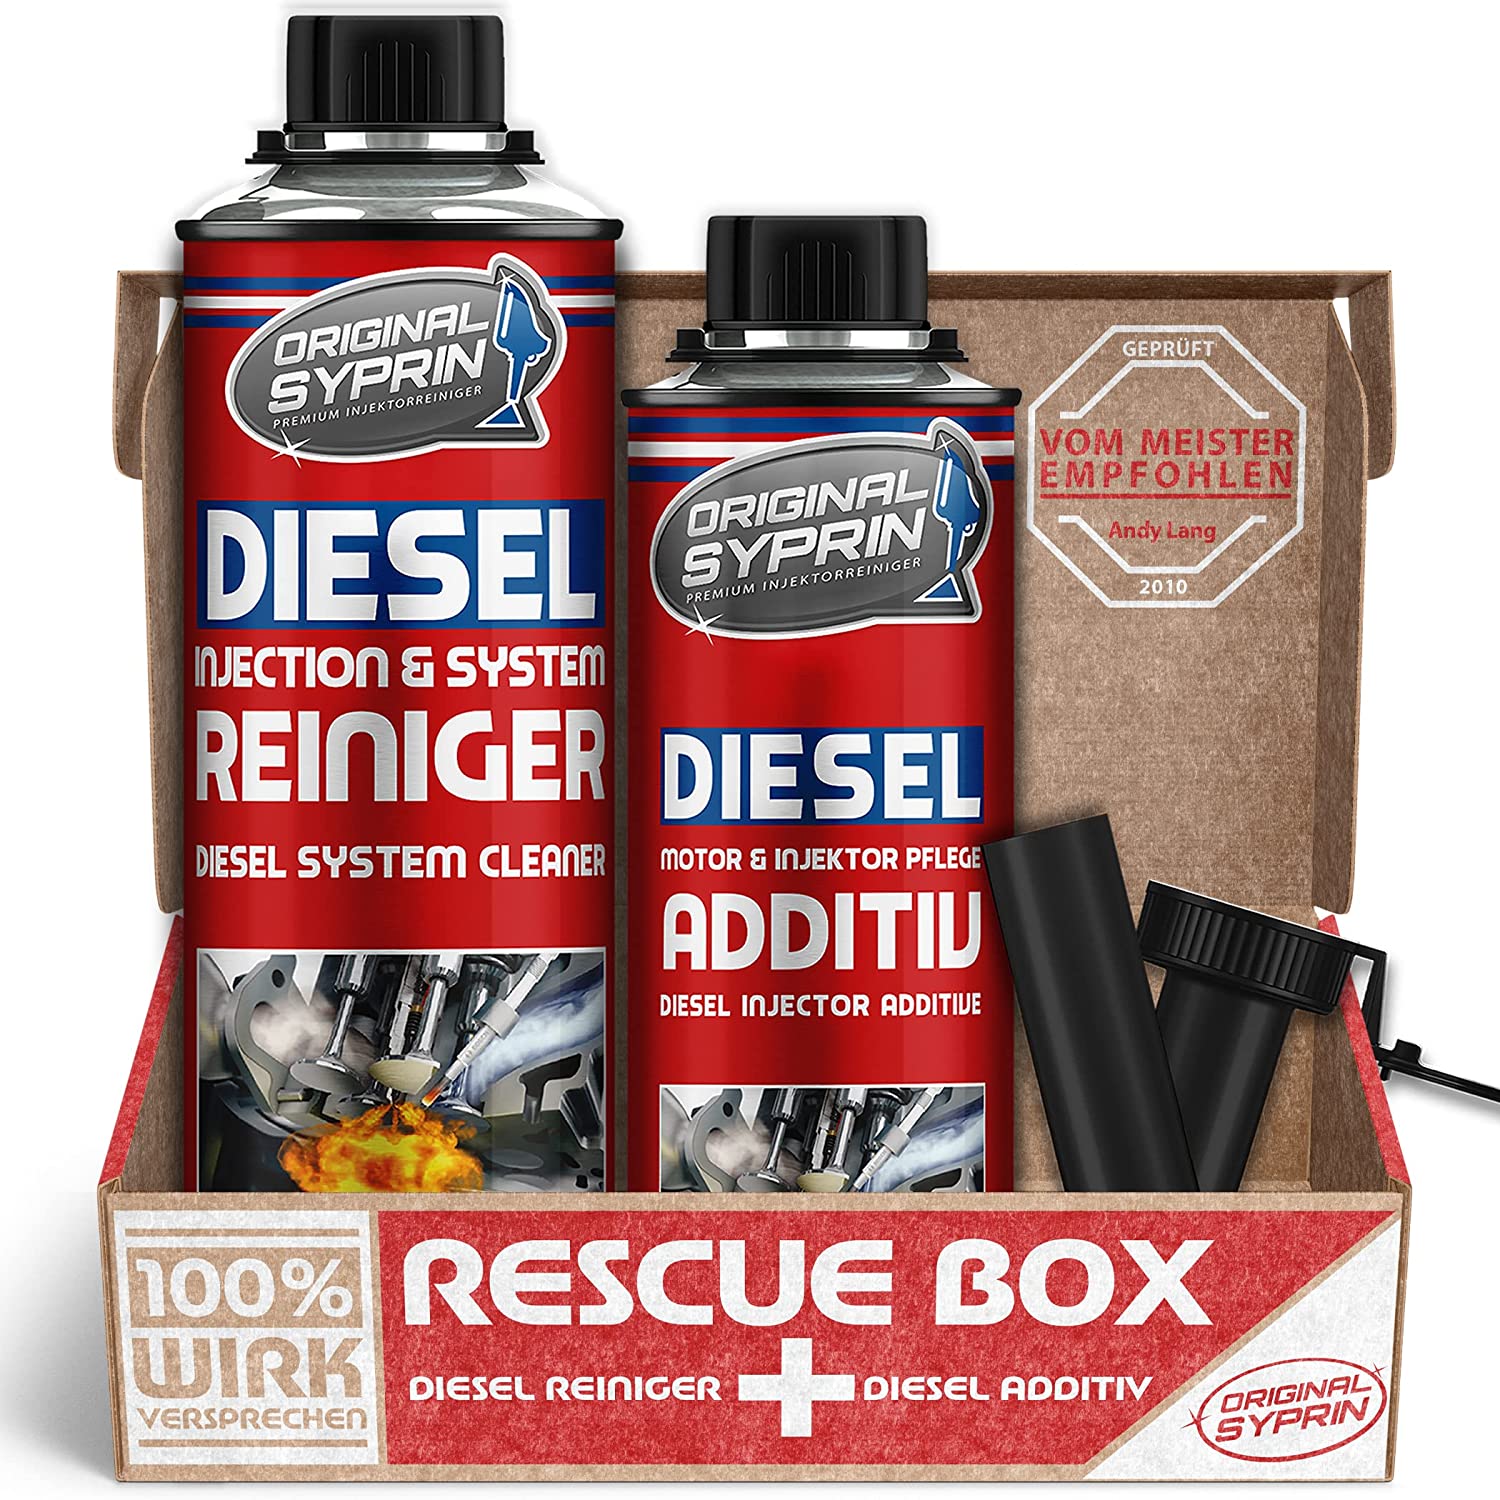 Original Syprin Diesel Additiv und Reiniger